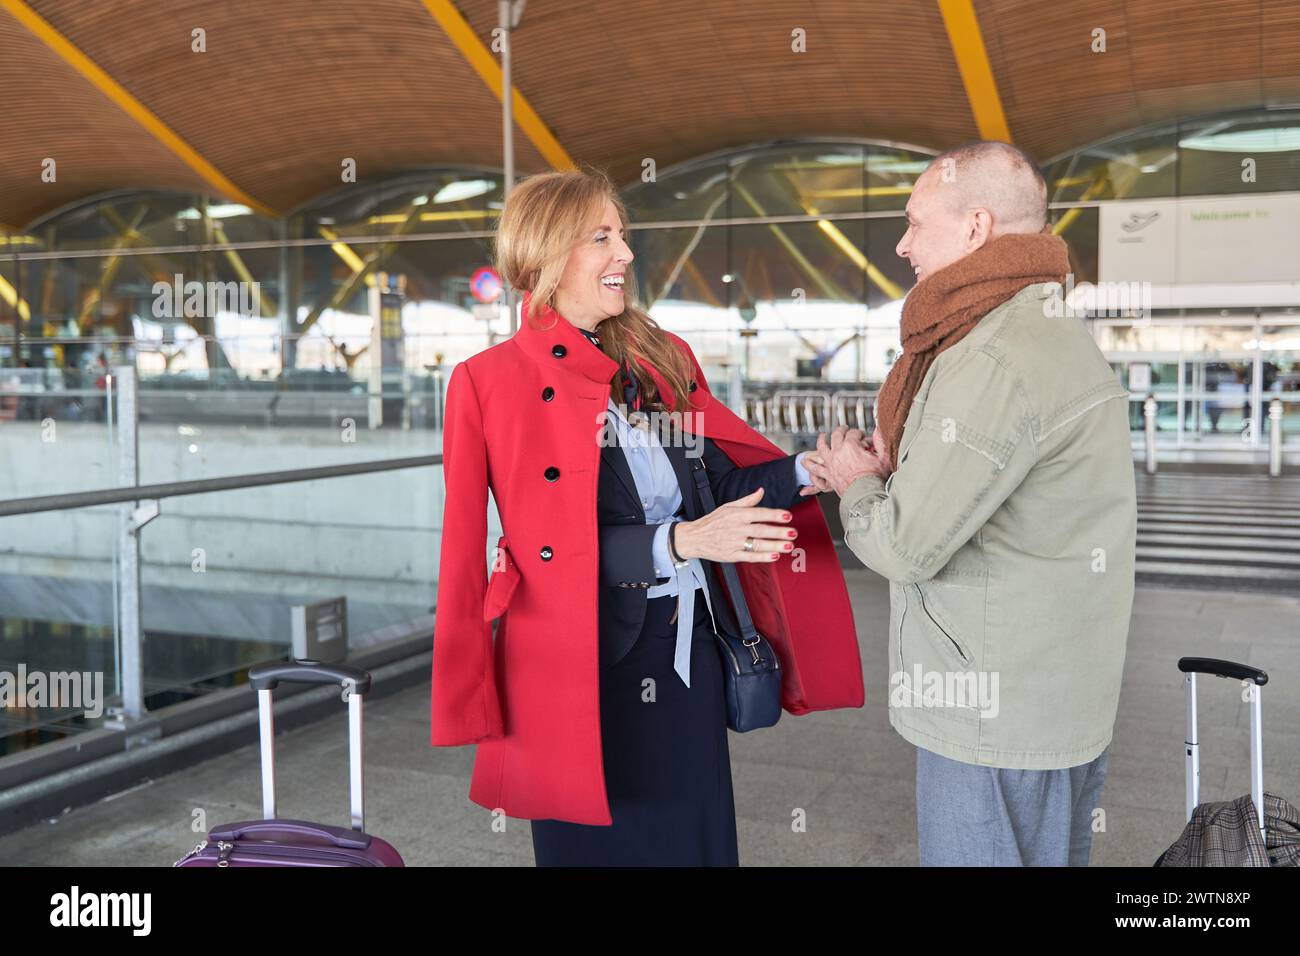 un couple joyeux et mature avec des sourires sur le visage et des valises à la main, prêt à se lancer dans une nouvelle aventure passionnante ensemble à l'aéroport Banque D'Images